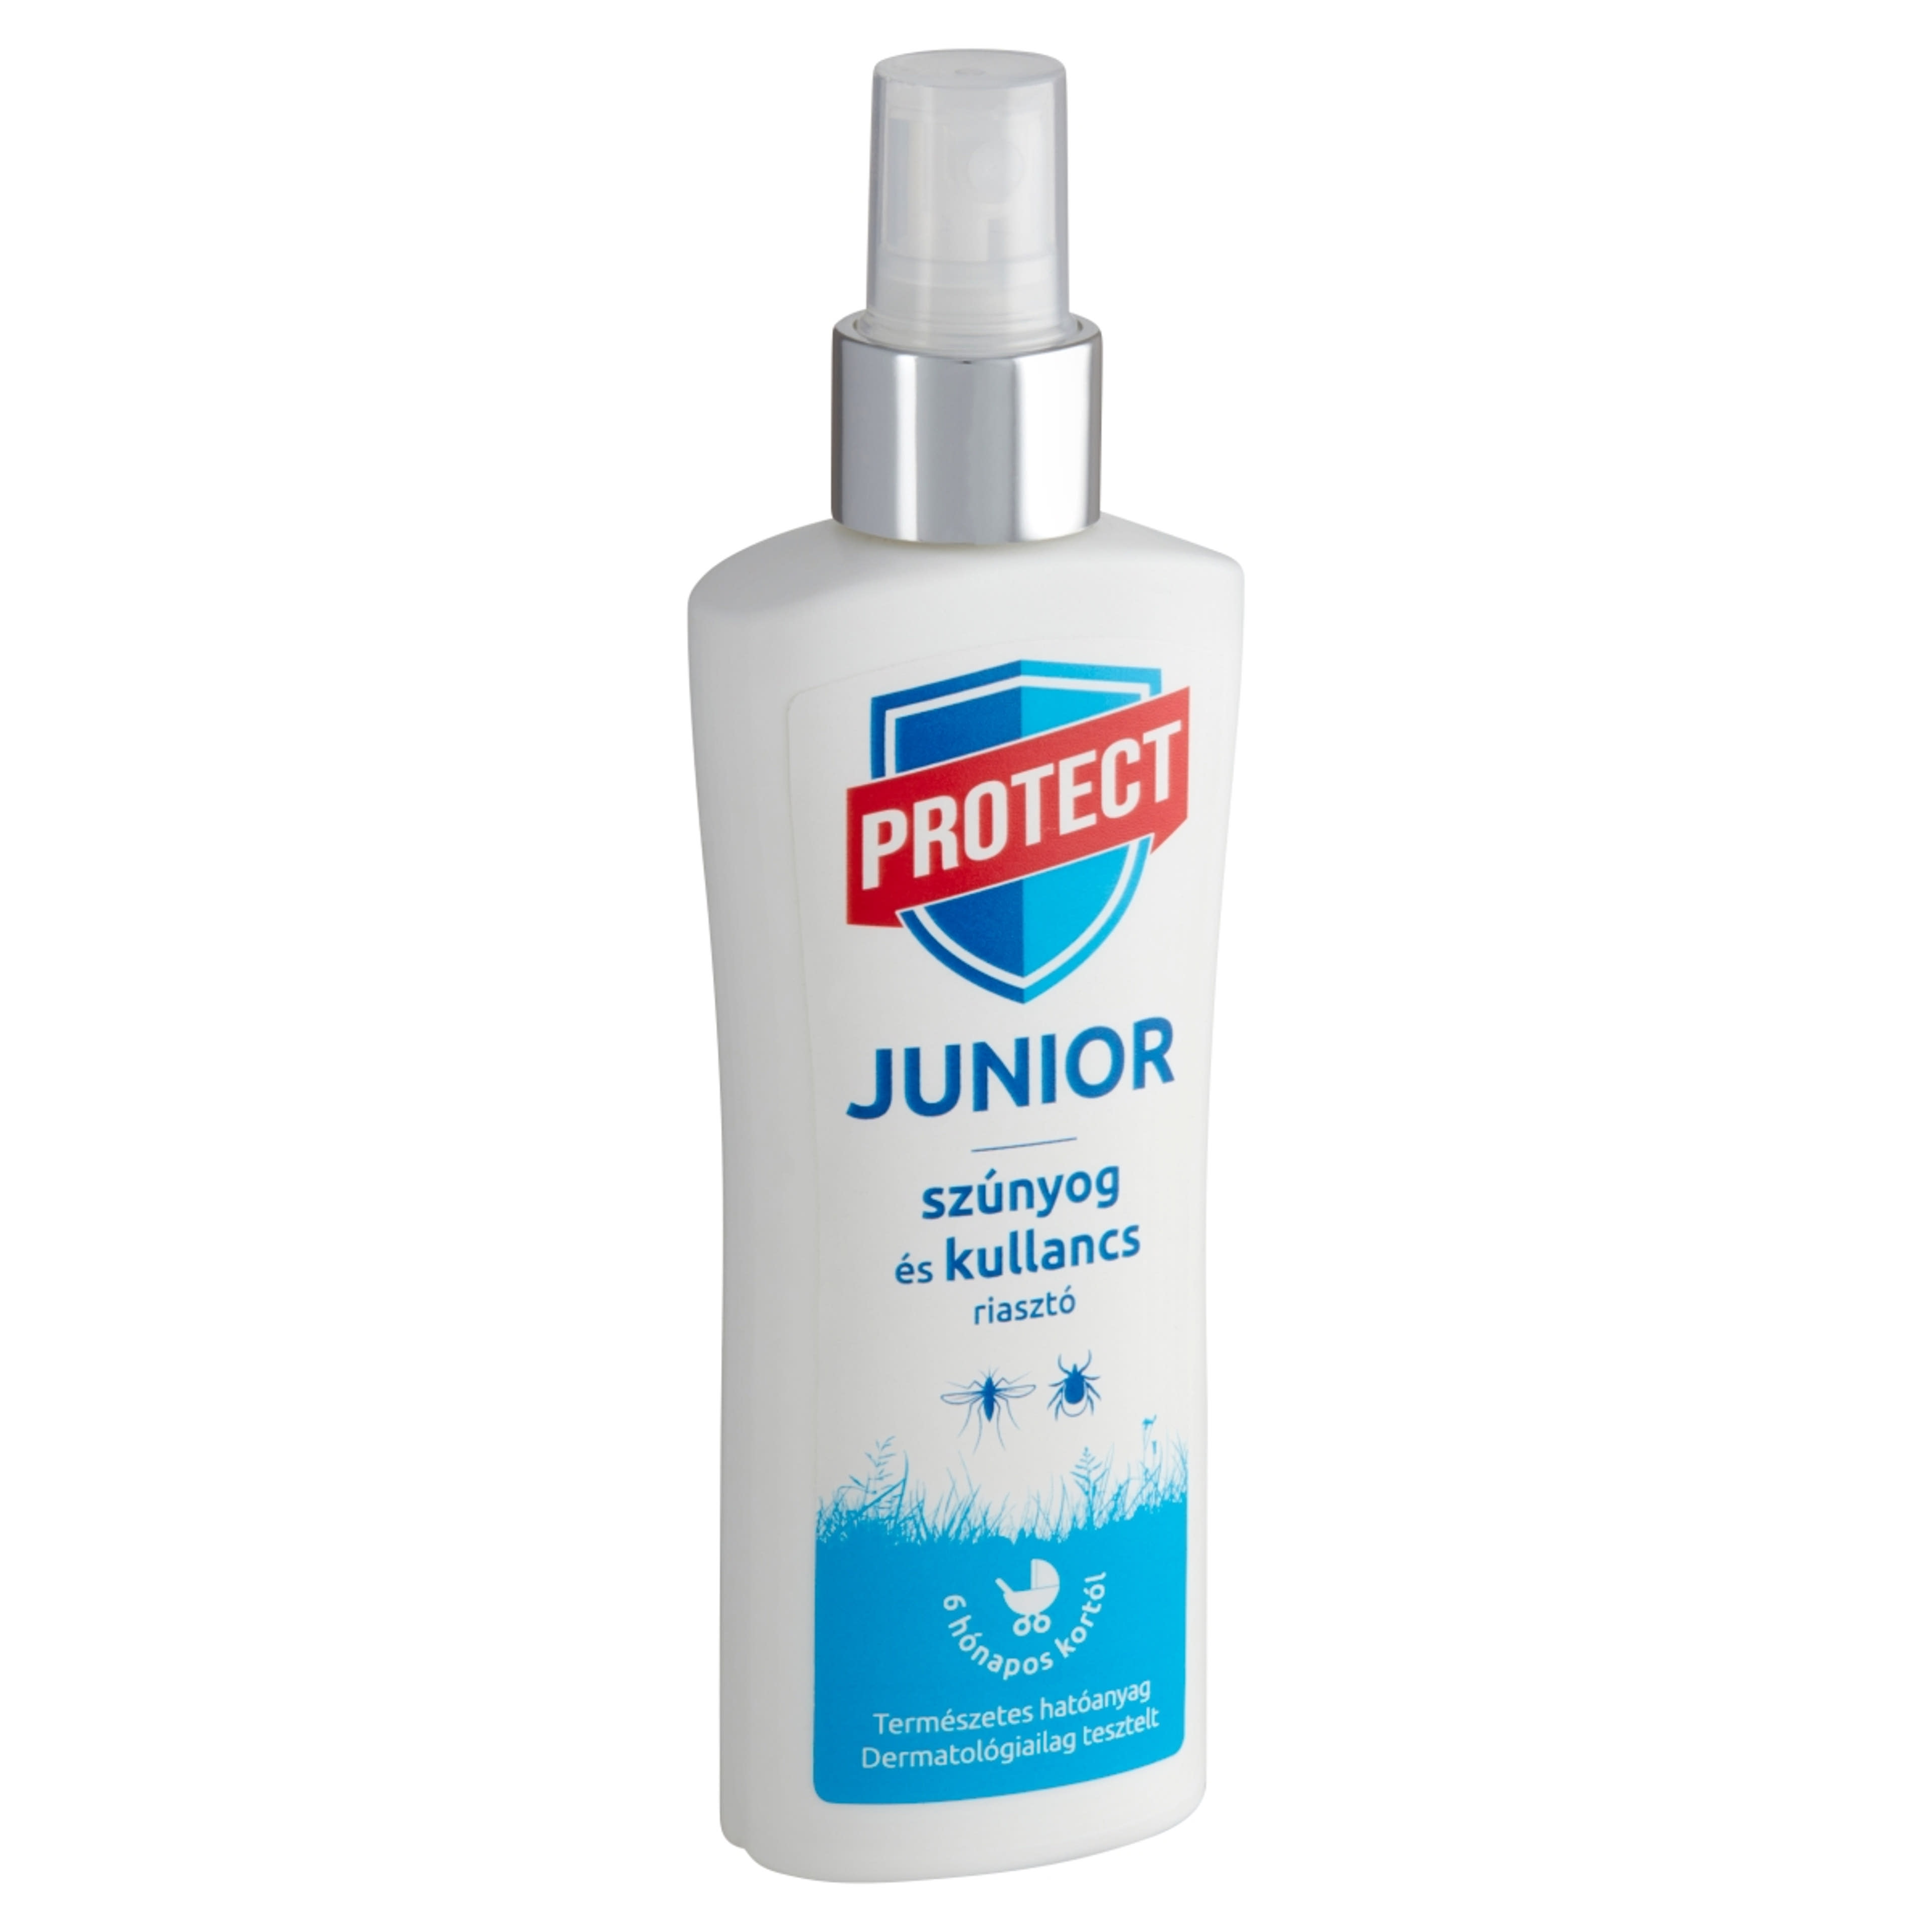 Protect Junior szúnyog- és kullancsriasztó permet 6 hónapos kortól - 100 ml-2